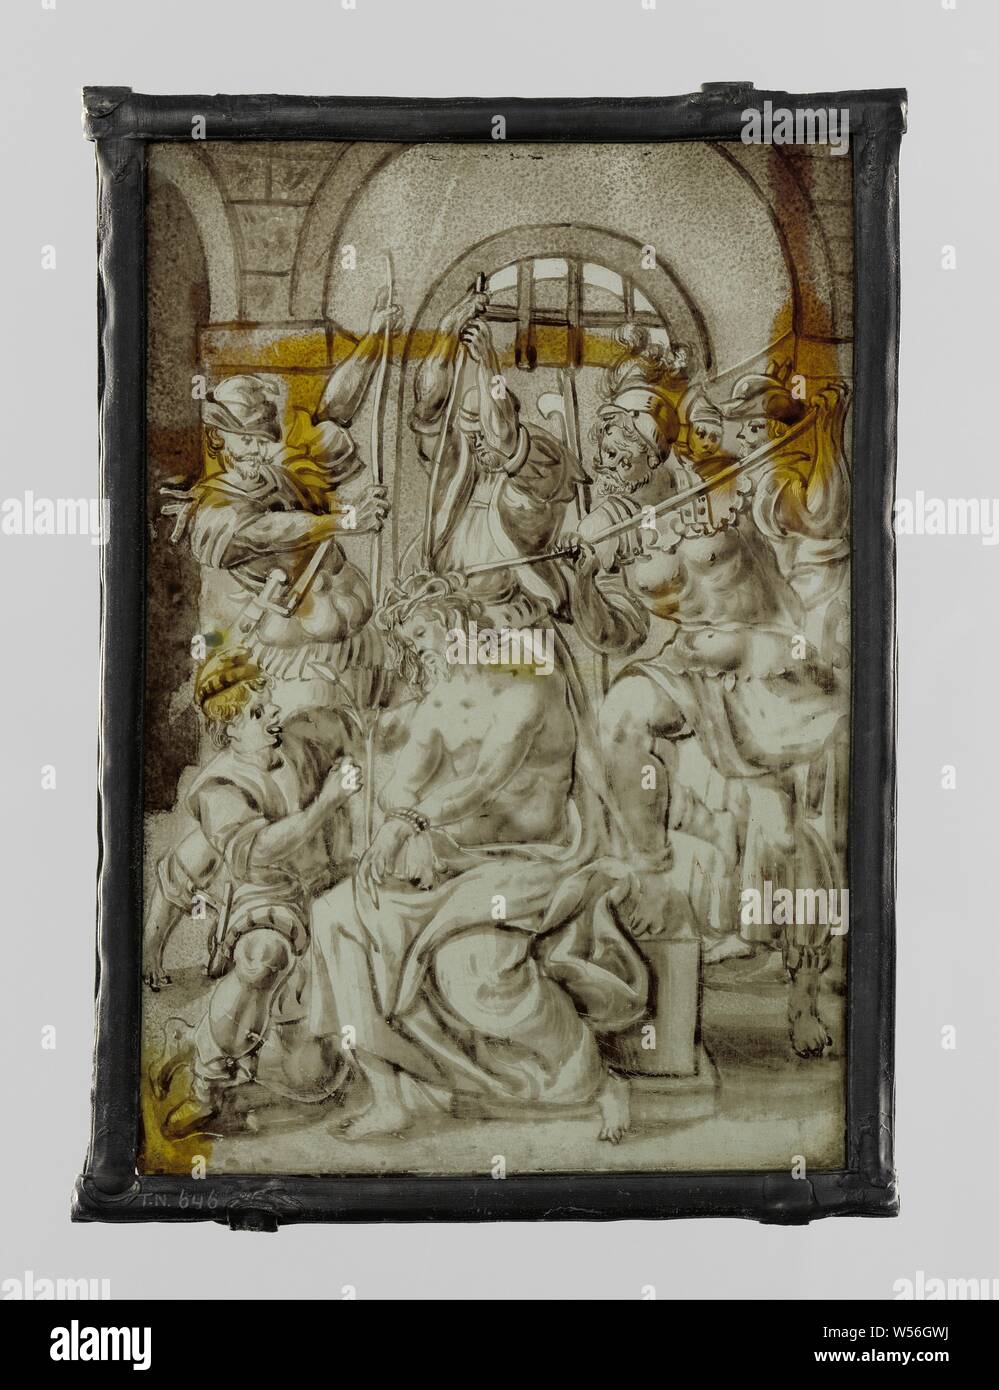 La couronne d'épines, la couronne d'Épines du Christ. Le Christ est fasciné au premier plan, derrière lui et à côté de lui les soldats sont appuyant fermement la couronne sur sa tête. (Jean 19, 1-42), anonyme, 1600 - 1700, verre, h 18,7 cm × 13,3 cm w Banque D'Images